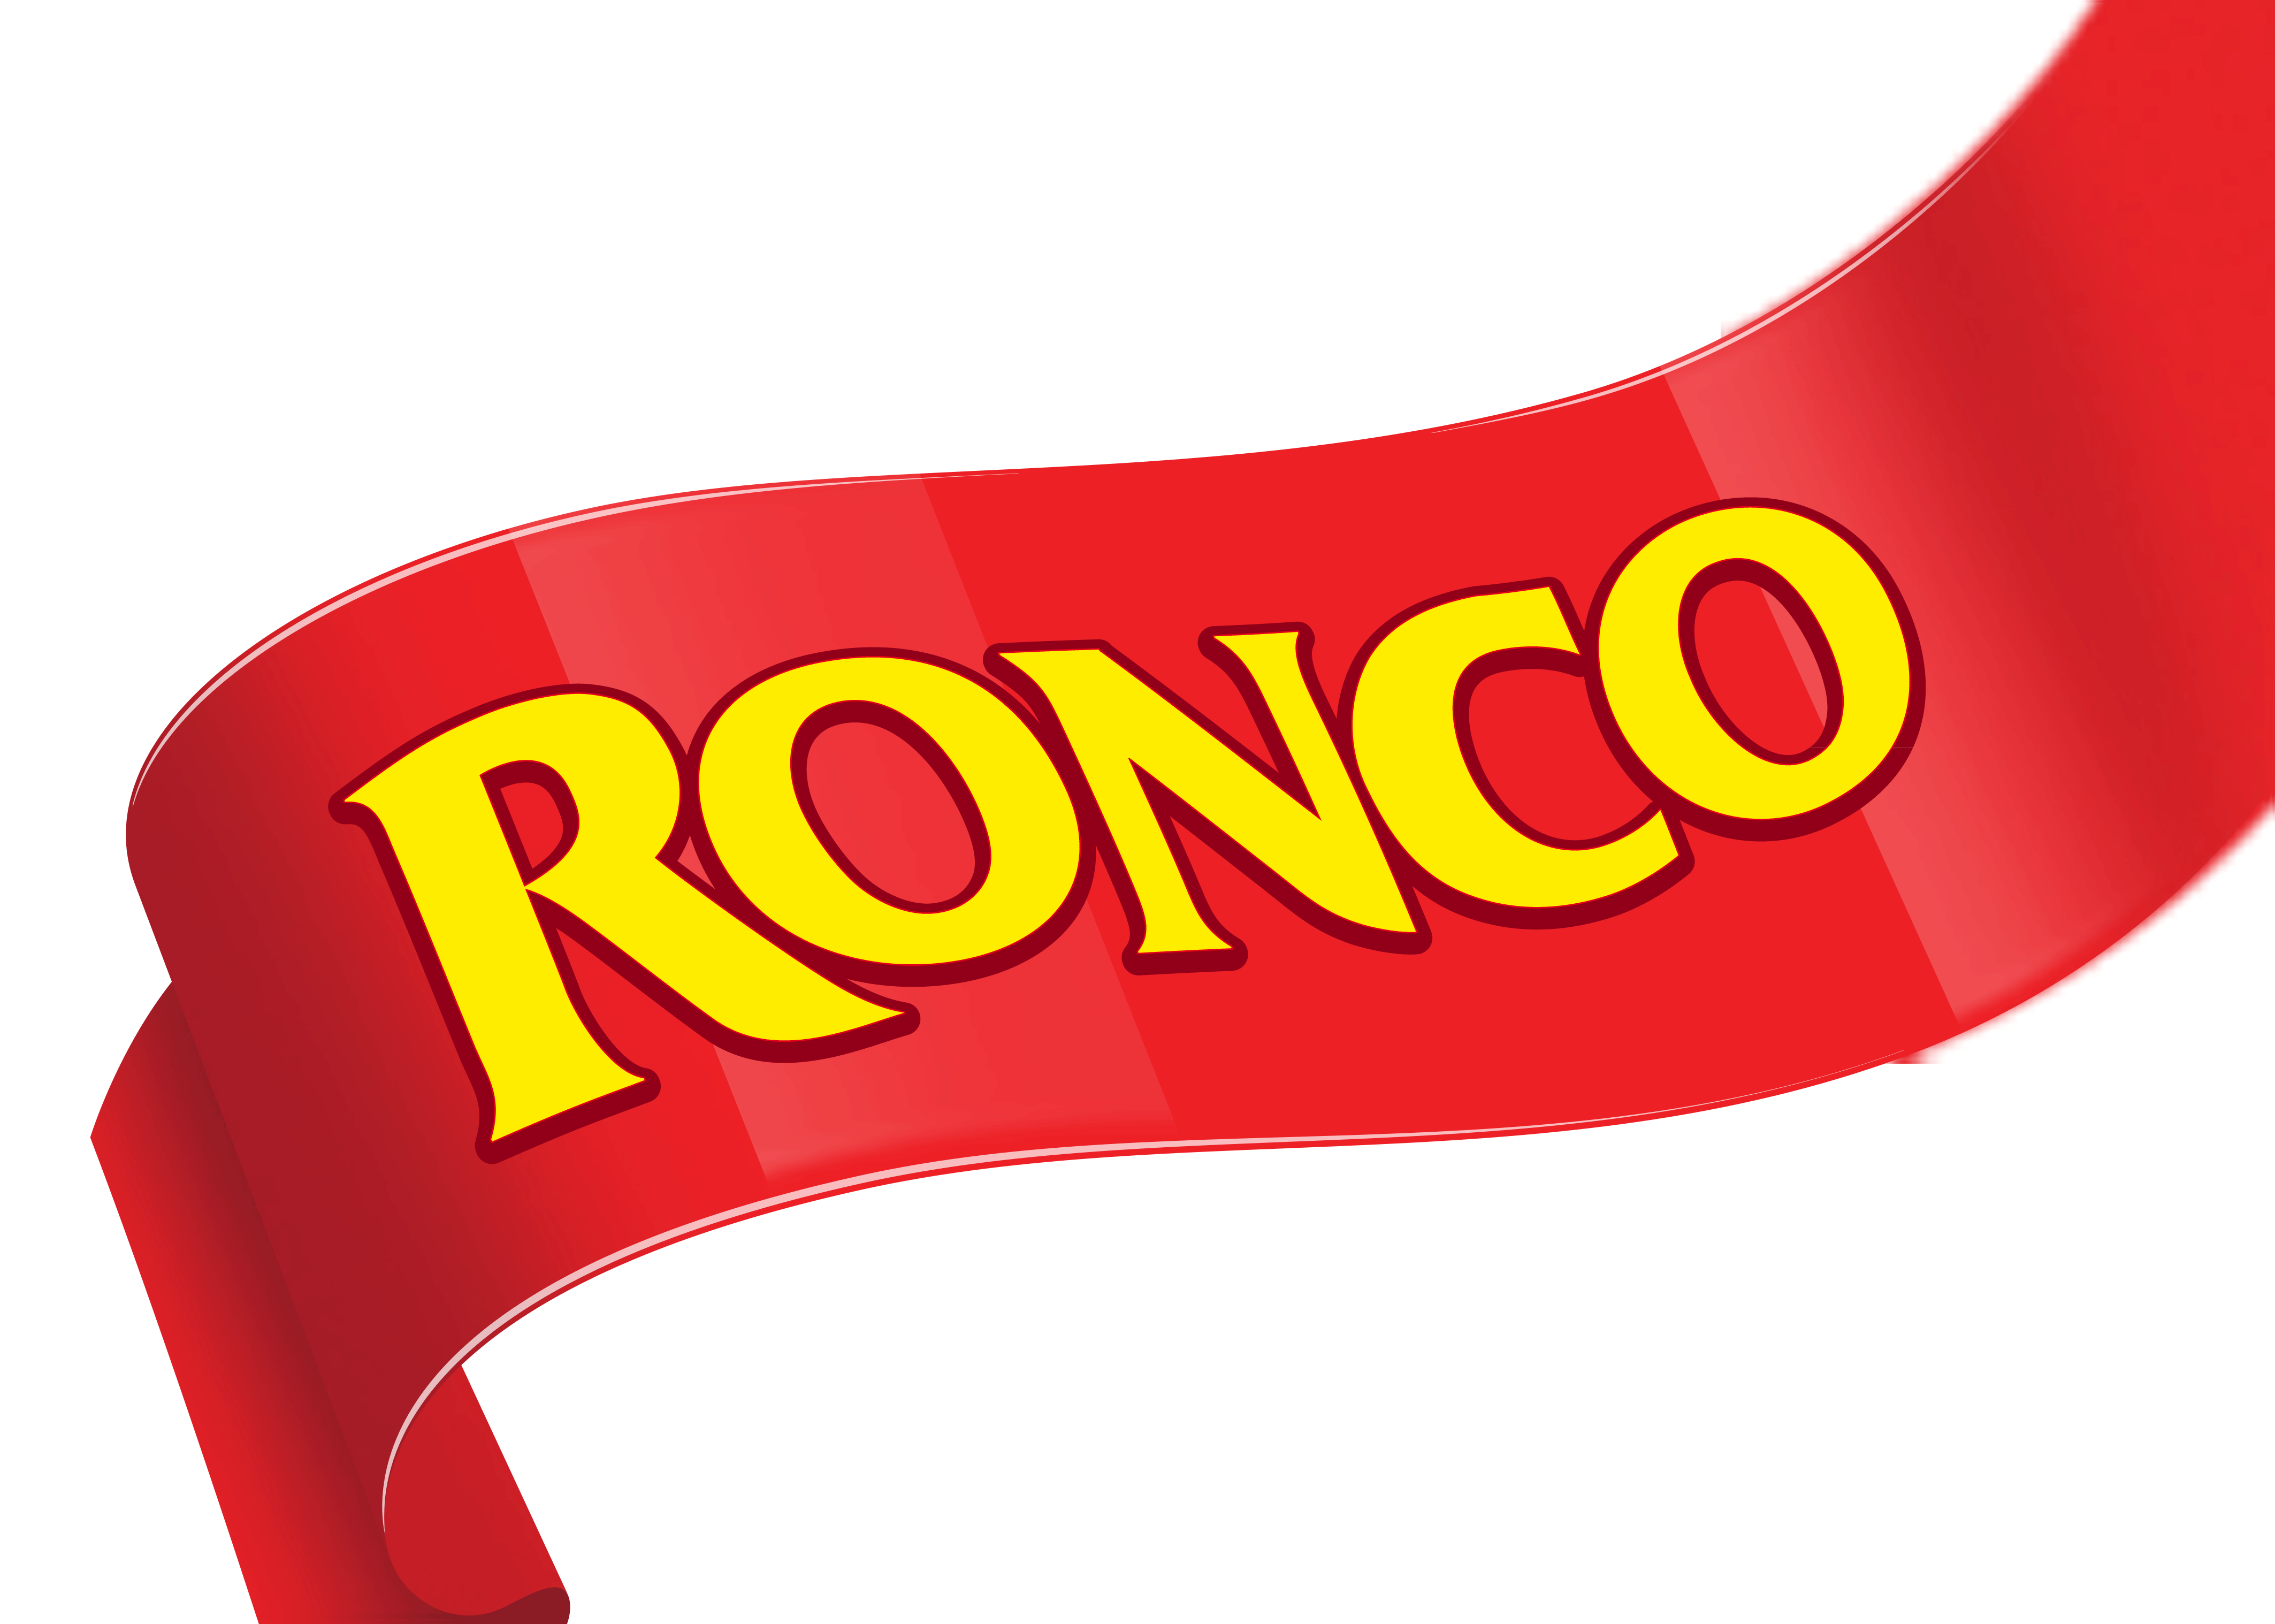 Ronco